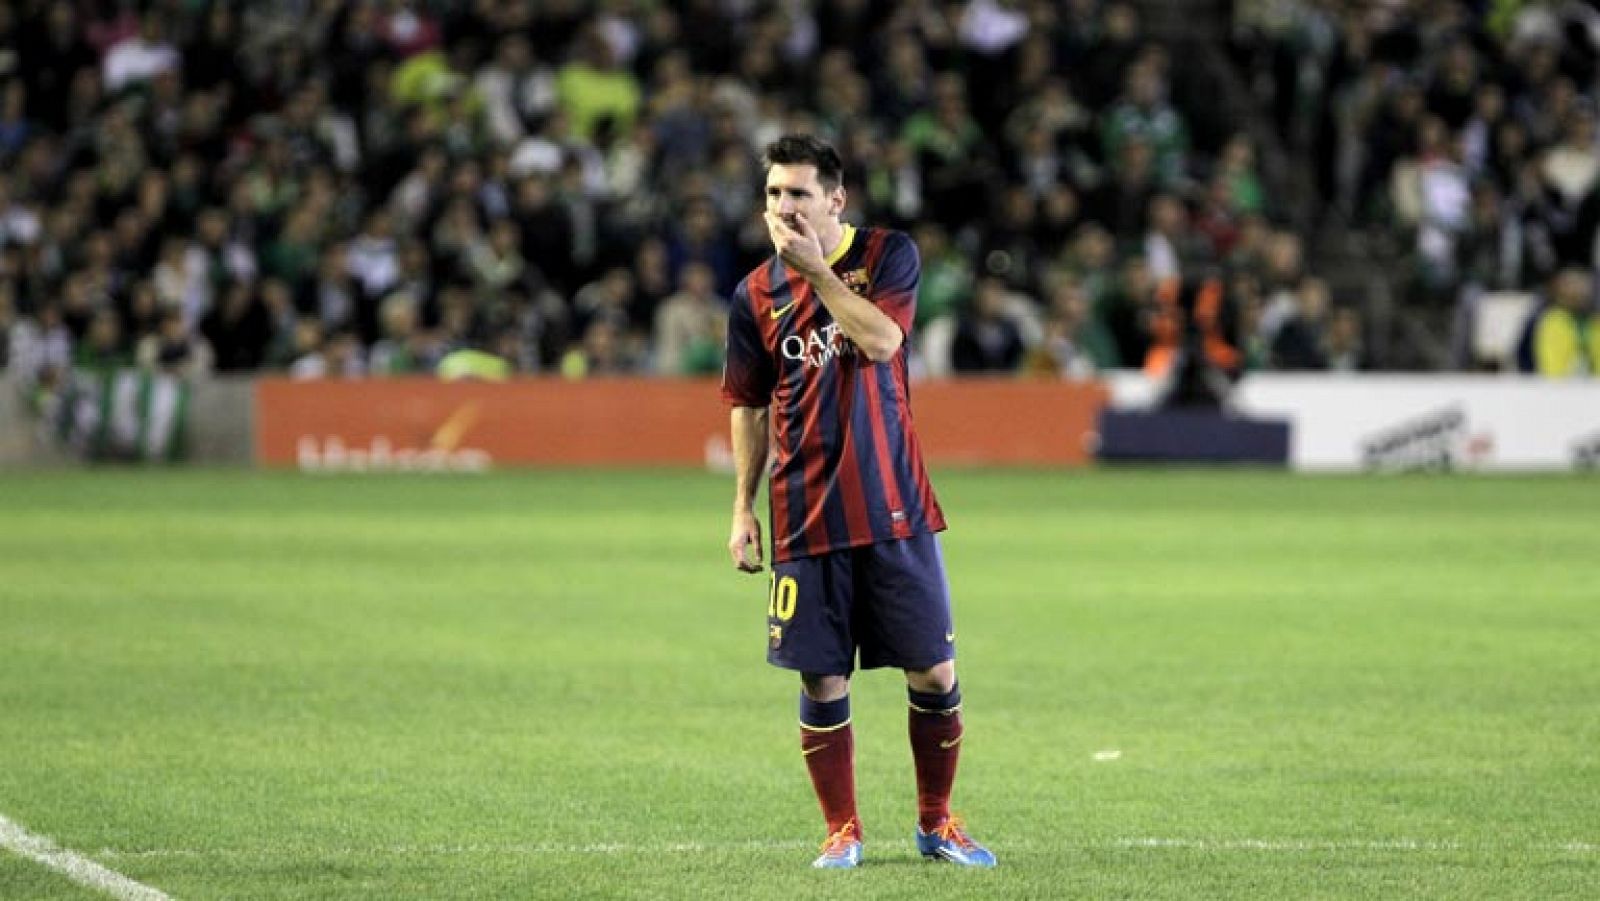 El delantero argentino del FC Barcelona Lionel Messi ha manifestado que "no hay que buscar cosas raras" en lo referente a la lesión en el bíceps femoral de su pierna derecha que le mantendrá alejado de los terrenos de juego entre 6 y 8 semanas.